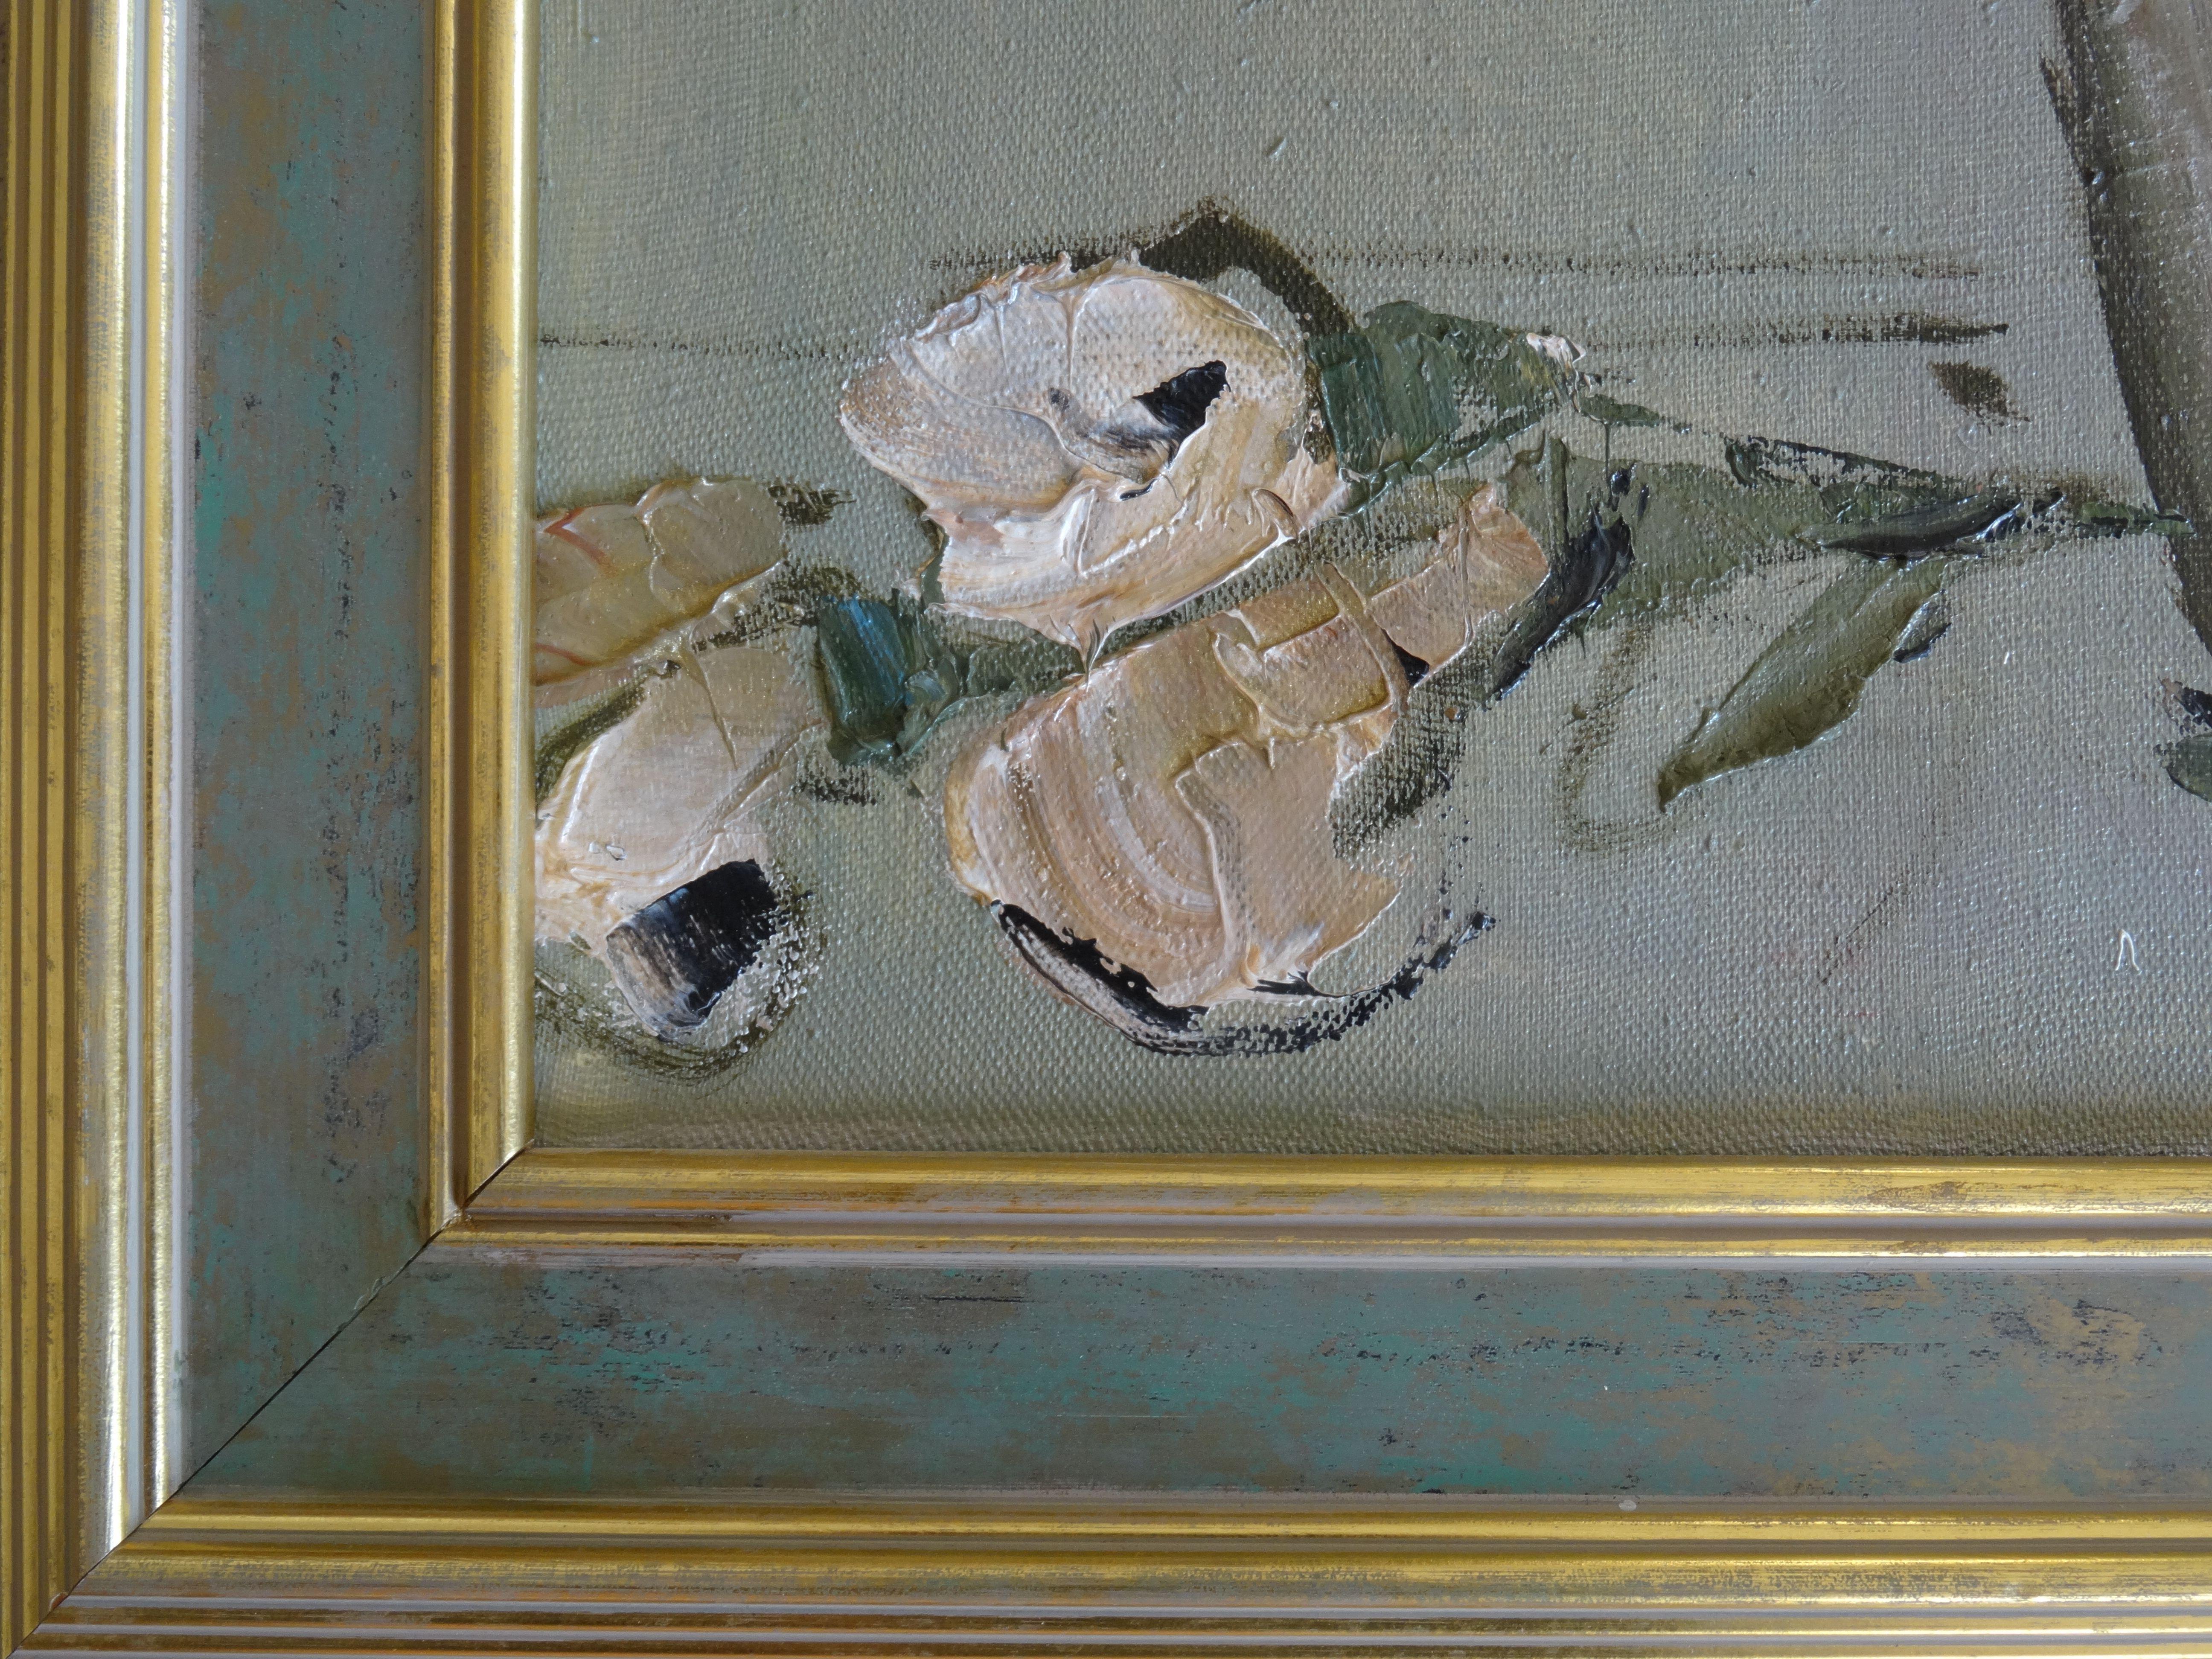 Blumen. 1997. Leinwand, Öl, 59x40 cm (Expressionismus), Art, von Ec. Ajder